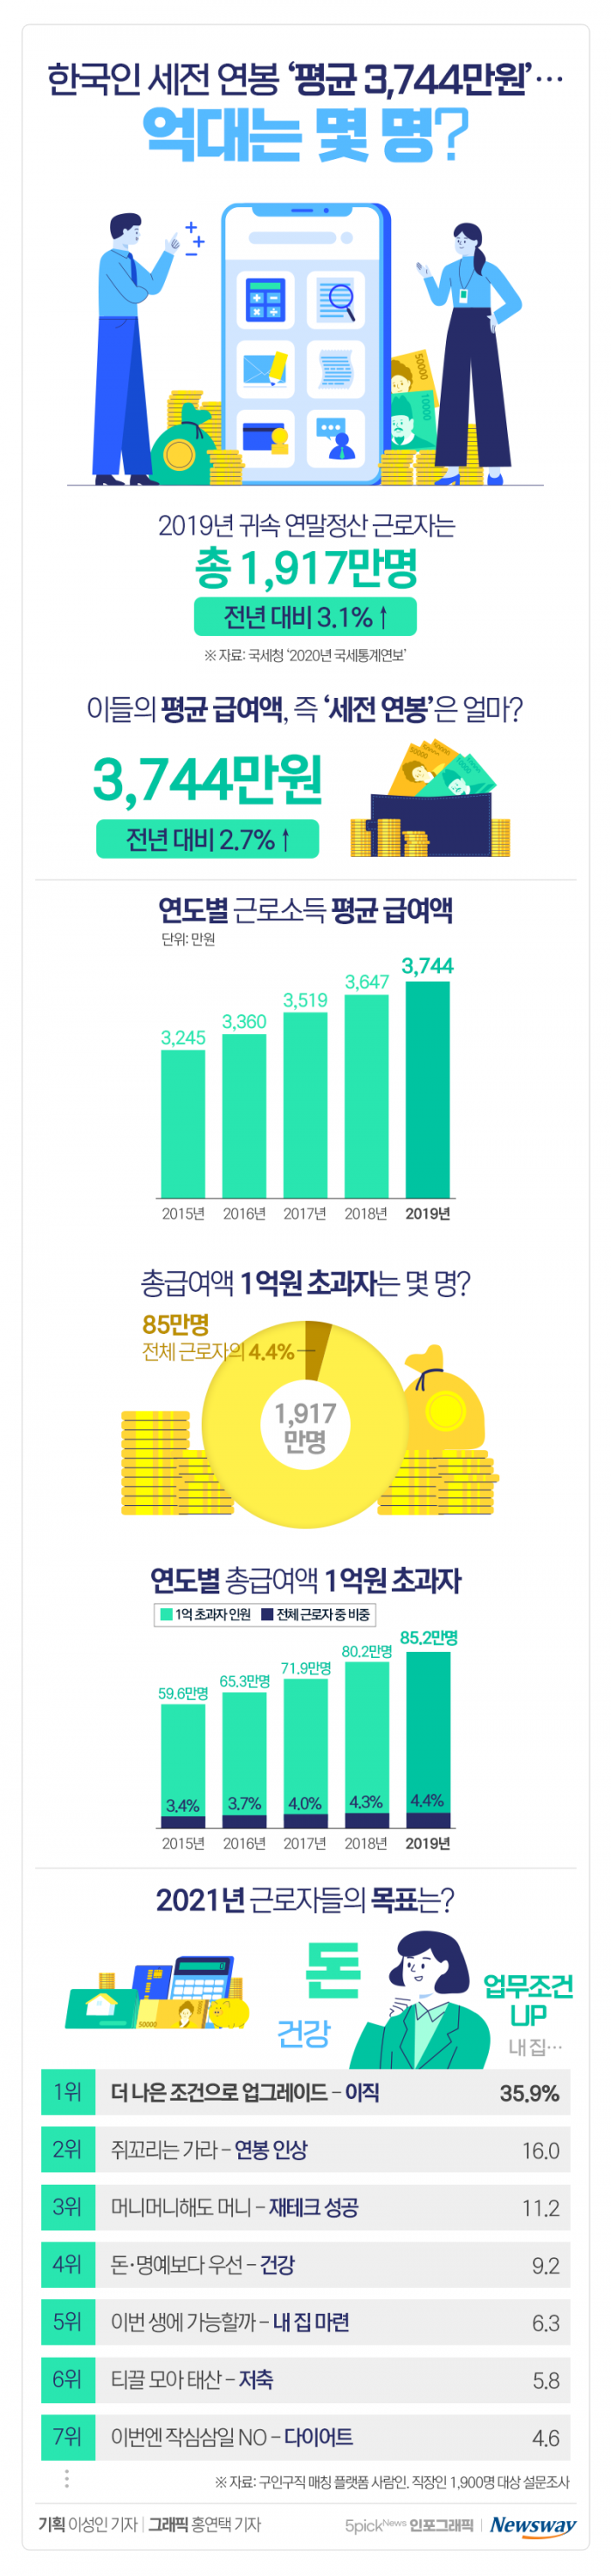 한국인 세전 연봉 ‘평균 3,744만원’···억대는 몇 명? 기사의 사진